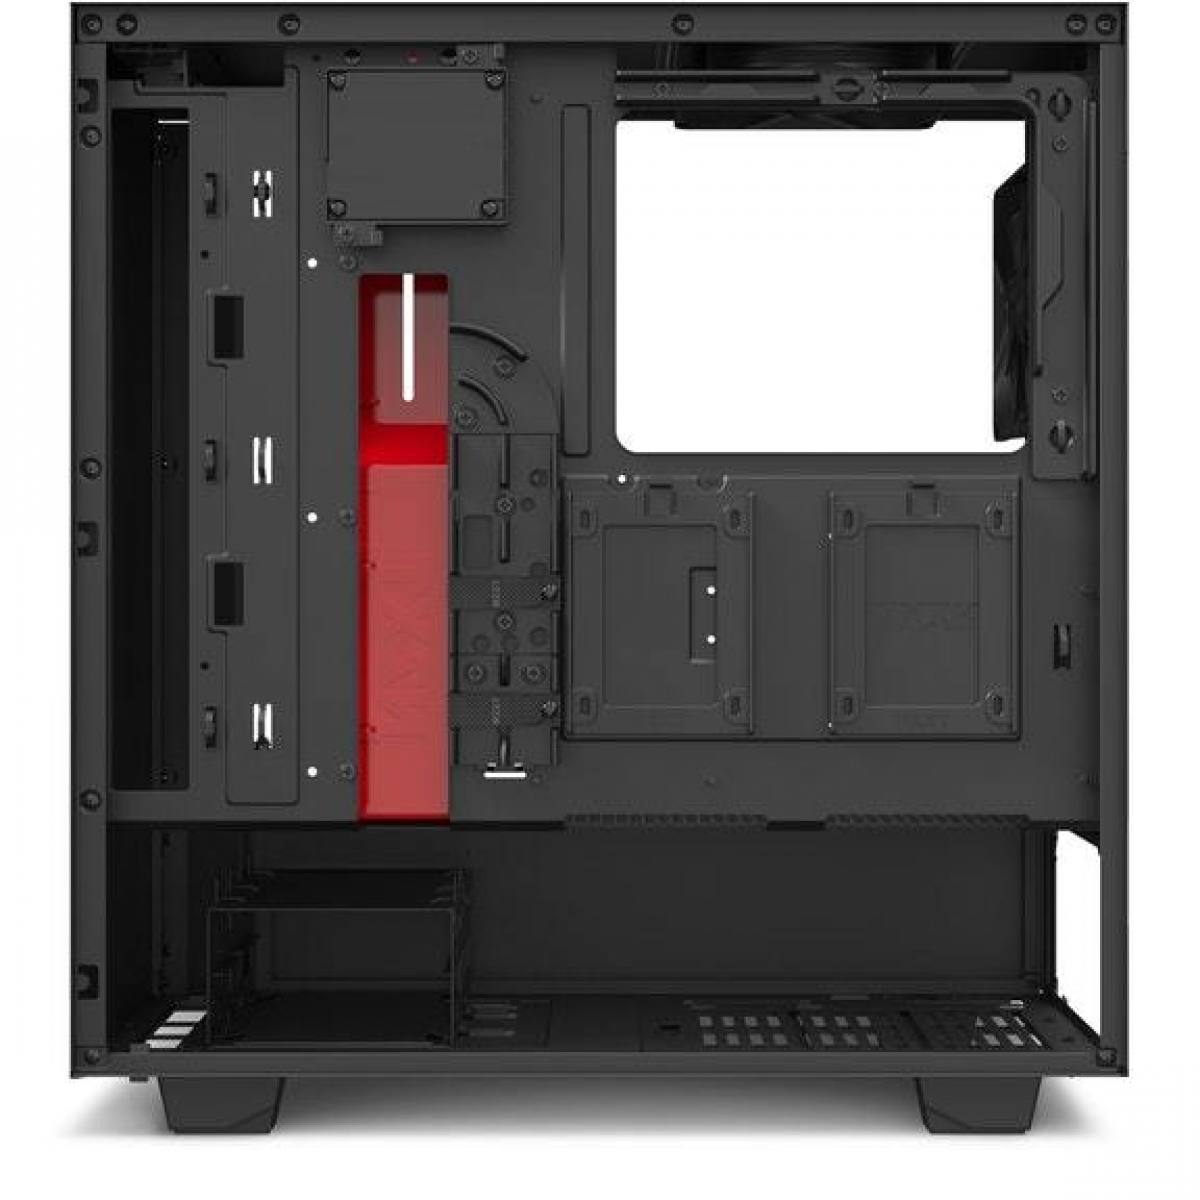 Case NZXT H510i MATTE BLACK/RED